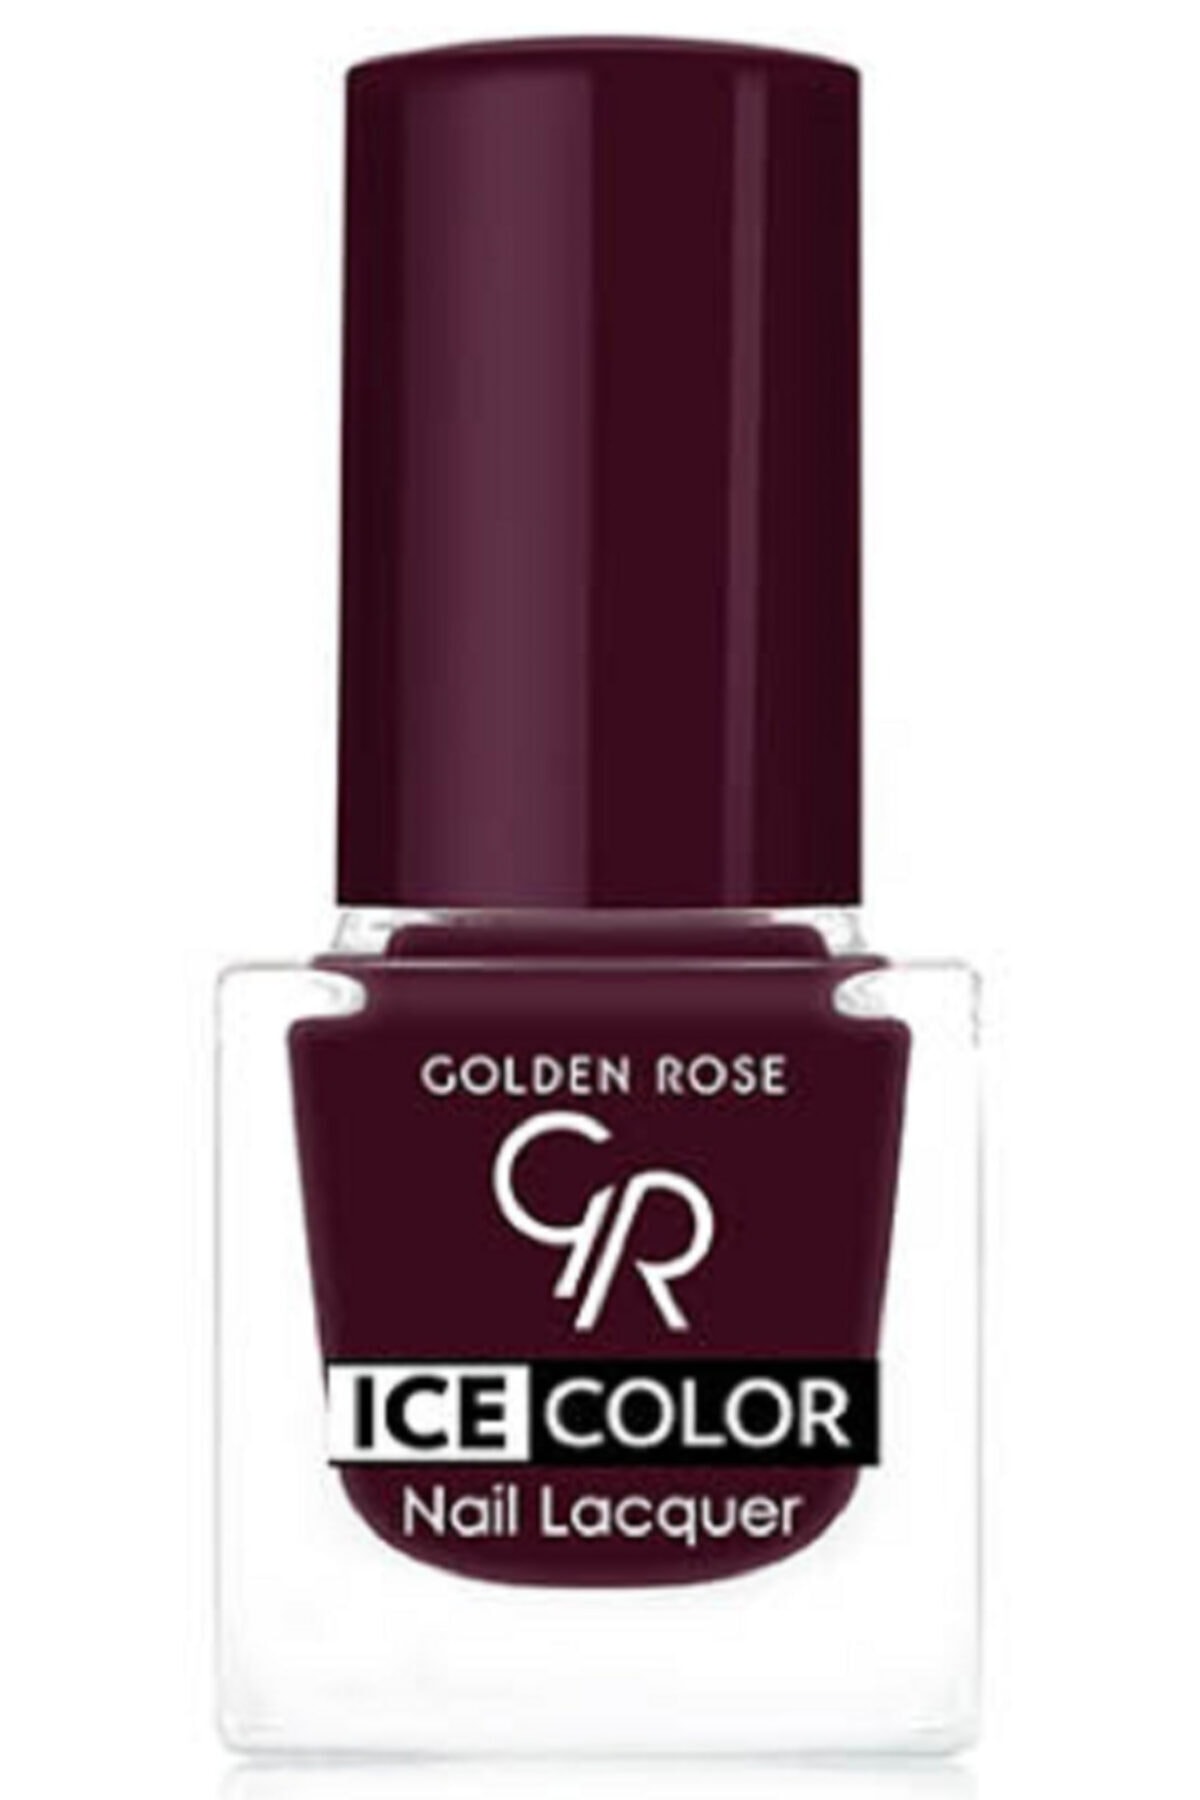 لاک ناخن یخی آیس چیک ICE شماره 147 رنگ خاکستری گلدن رز Golden Rose